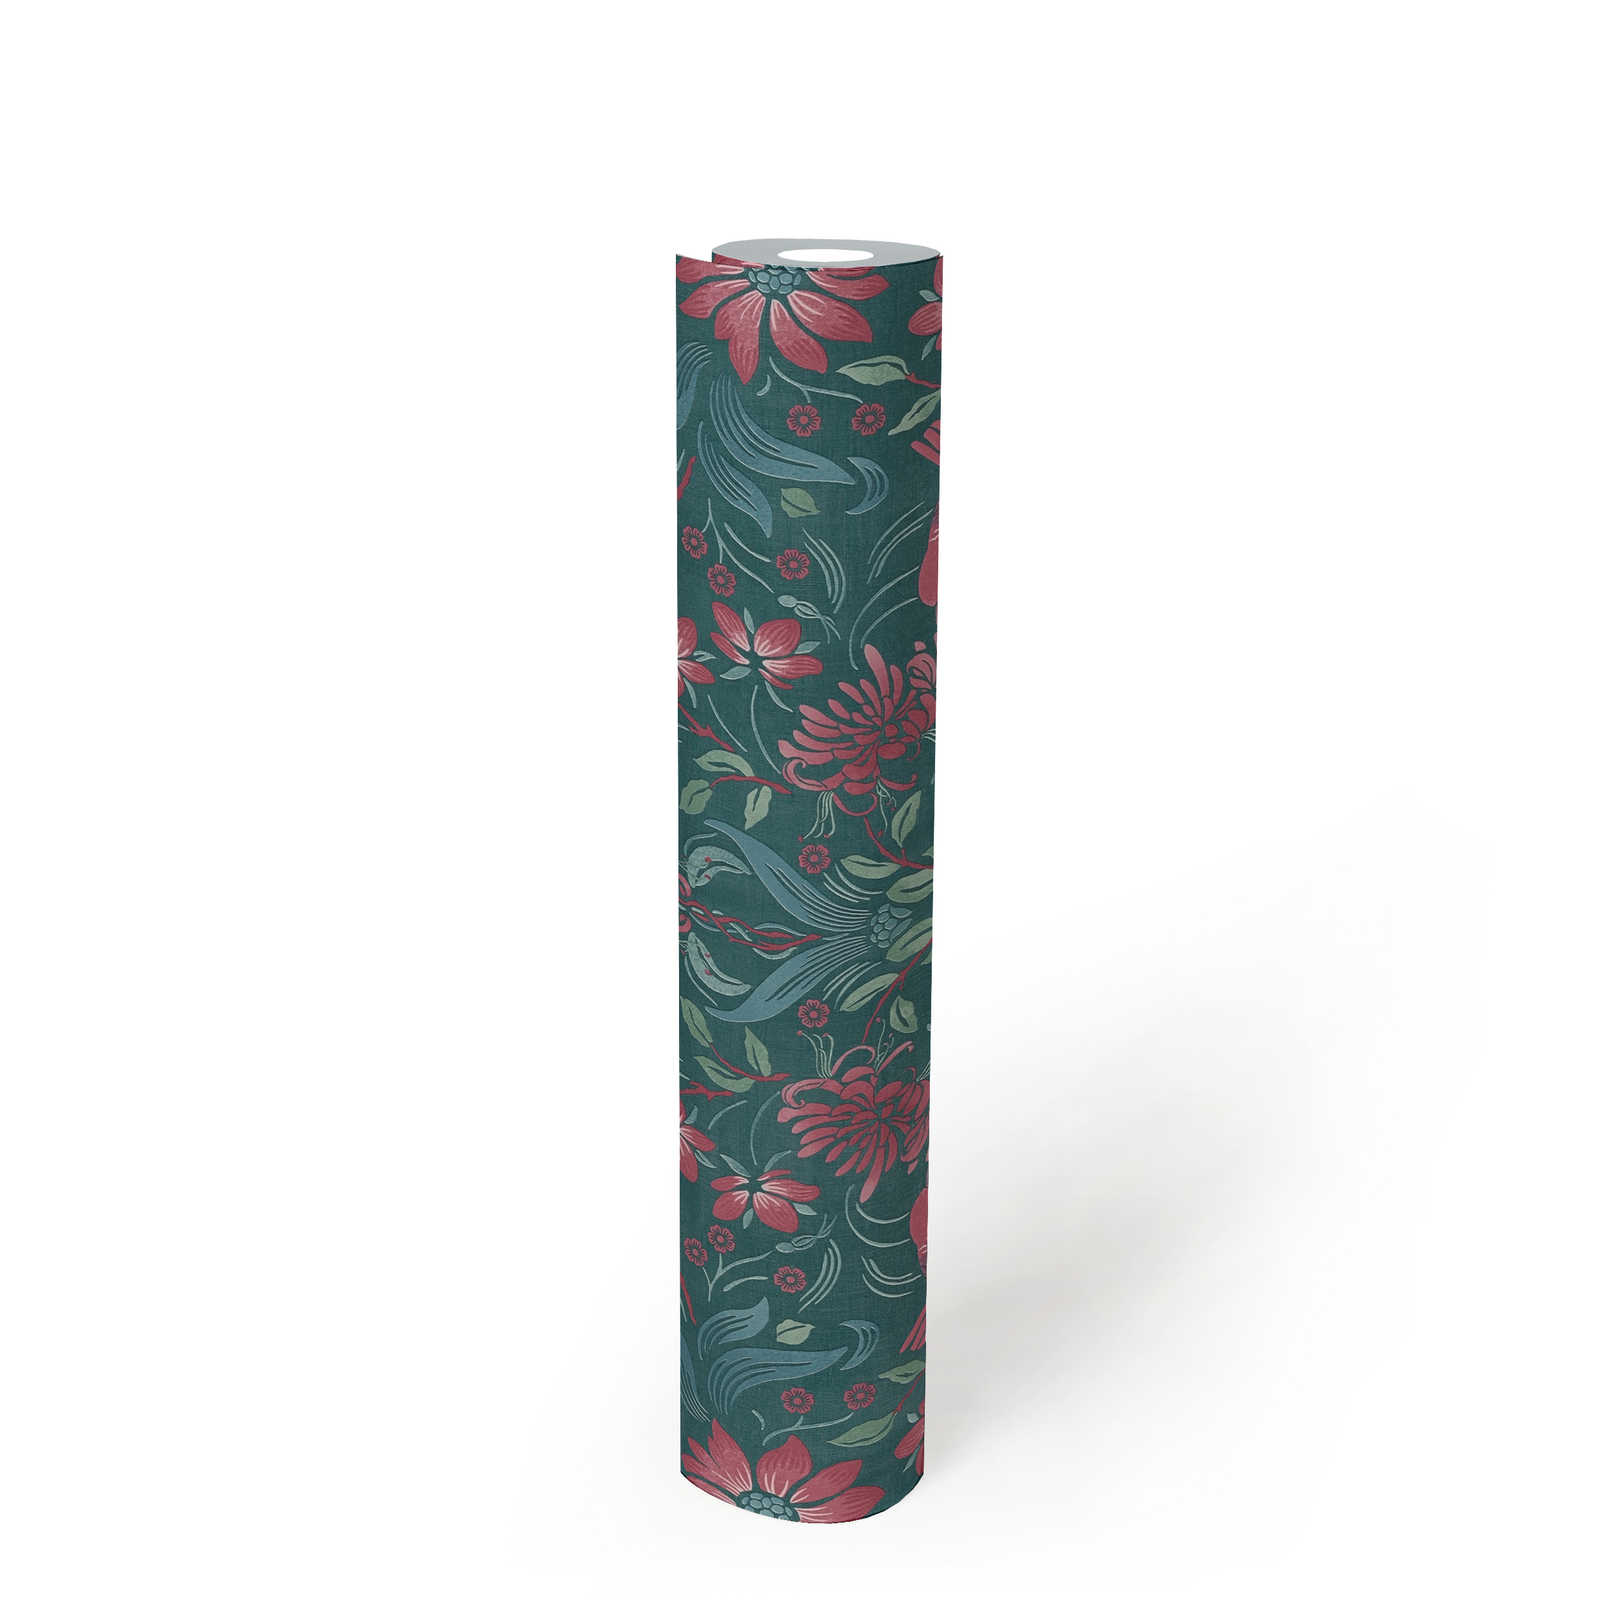             Florale Vliestapete mit Blumen & Vögel – Dunkelgrün, Pink, Grün
        